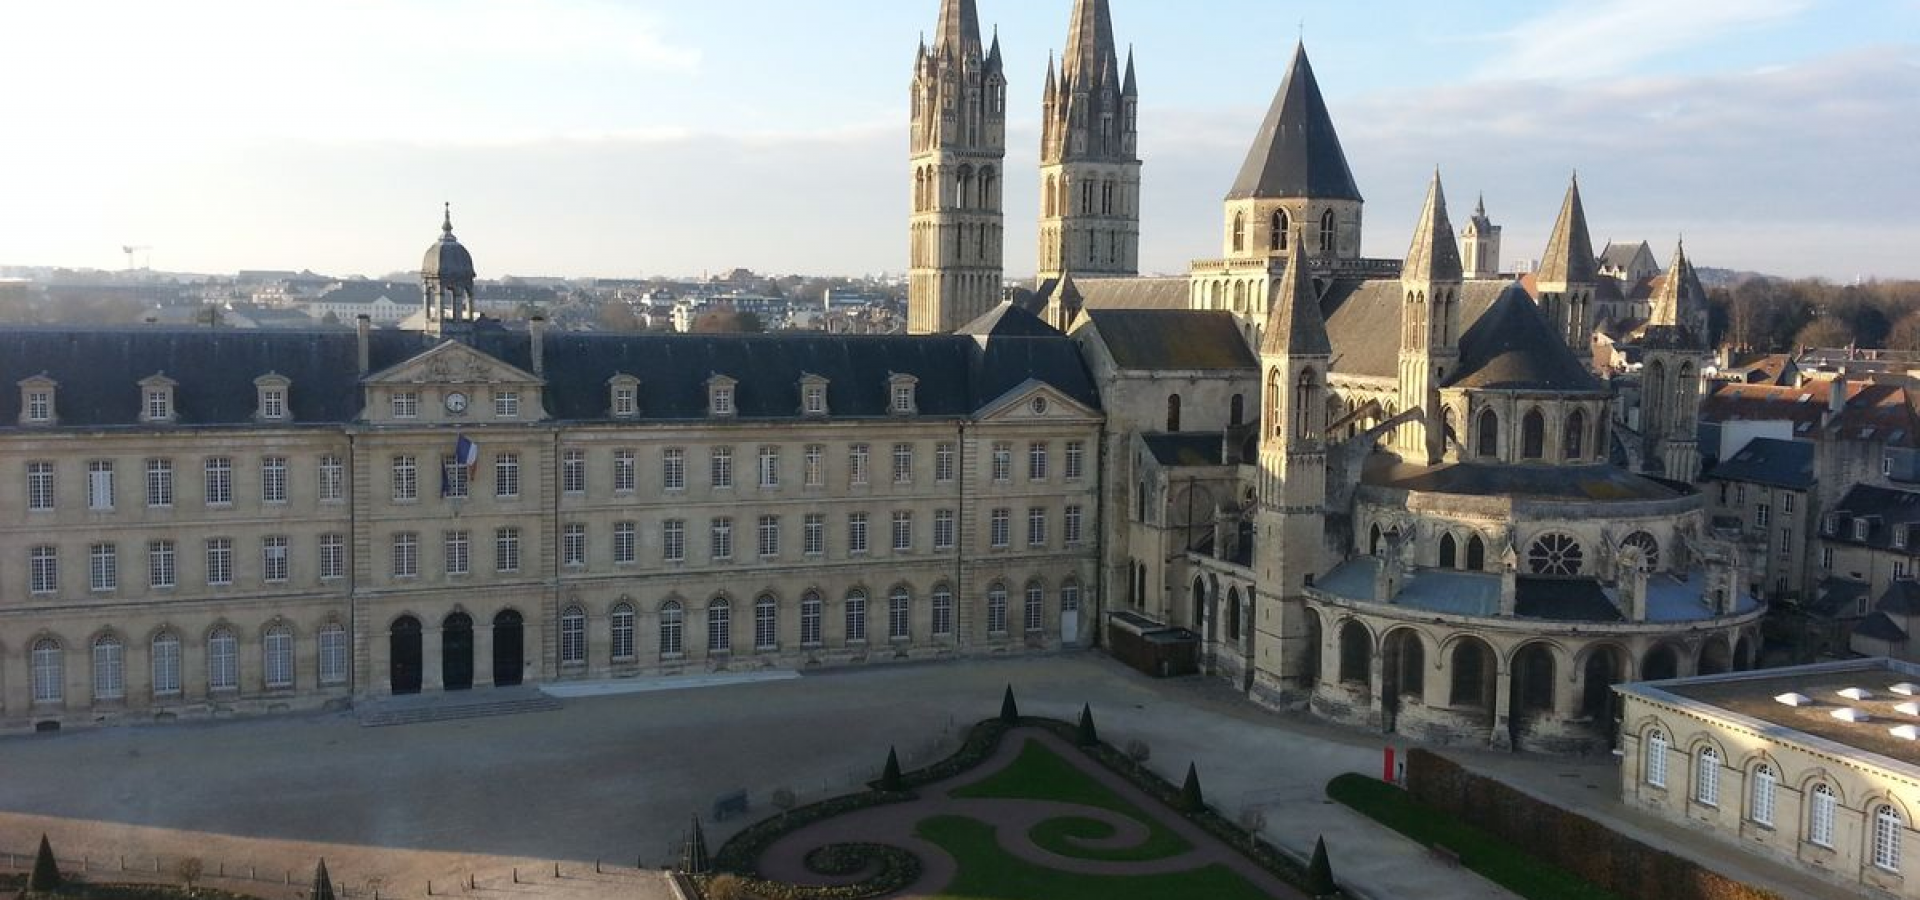 Image Habitat pour personnes avec déficiences visuelles à Caen (Normandie)